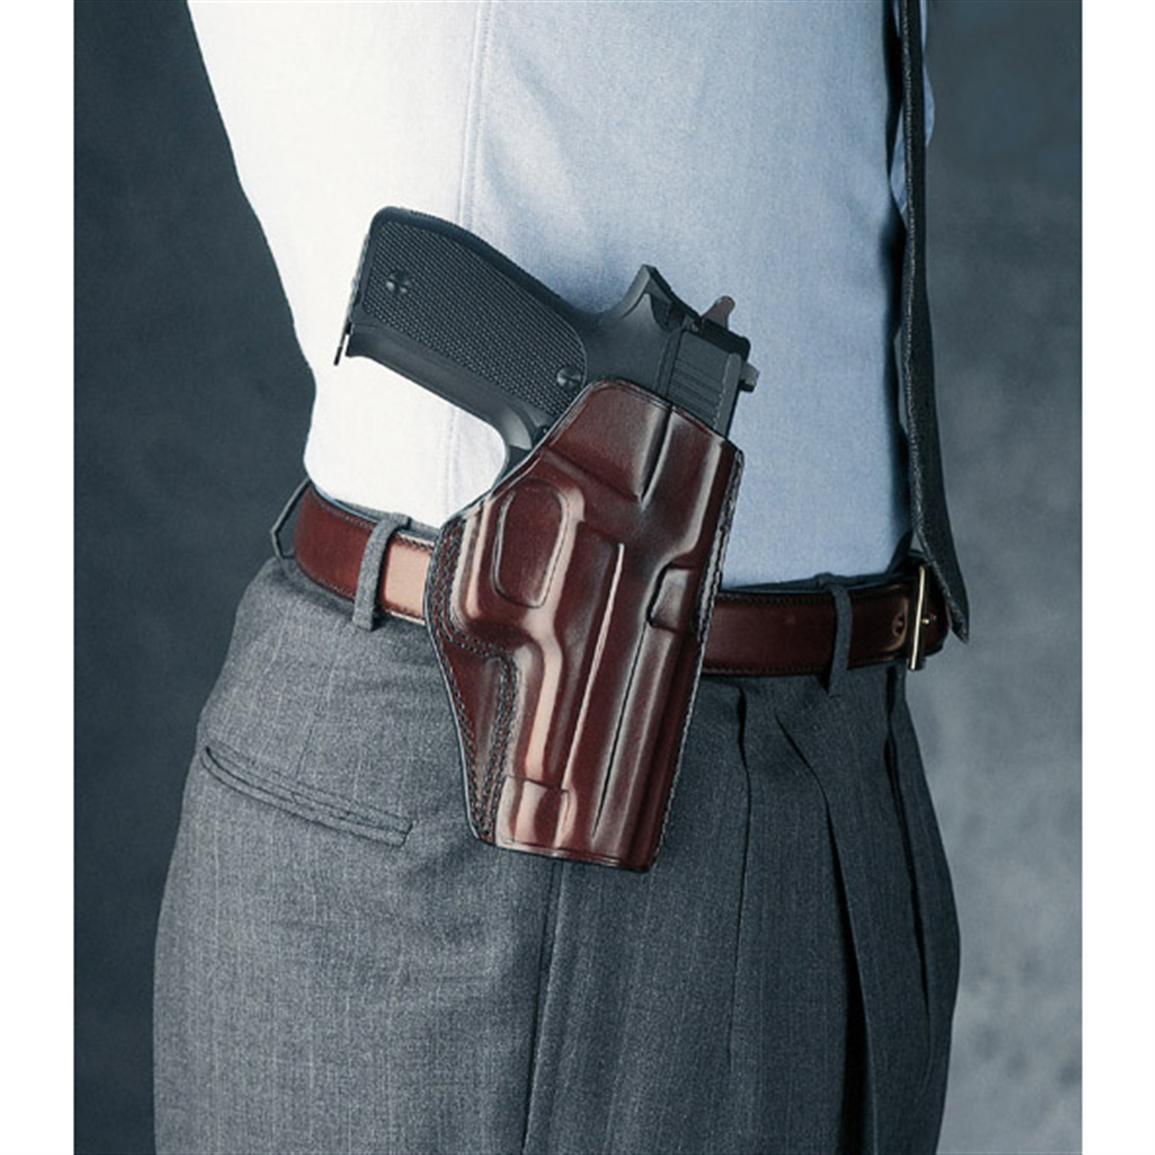 Concealed Handgun Permit Unit